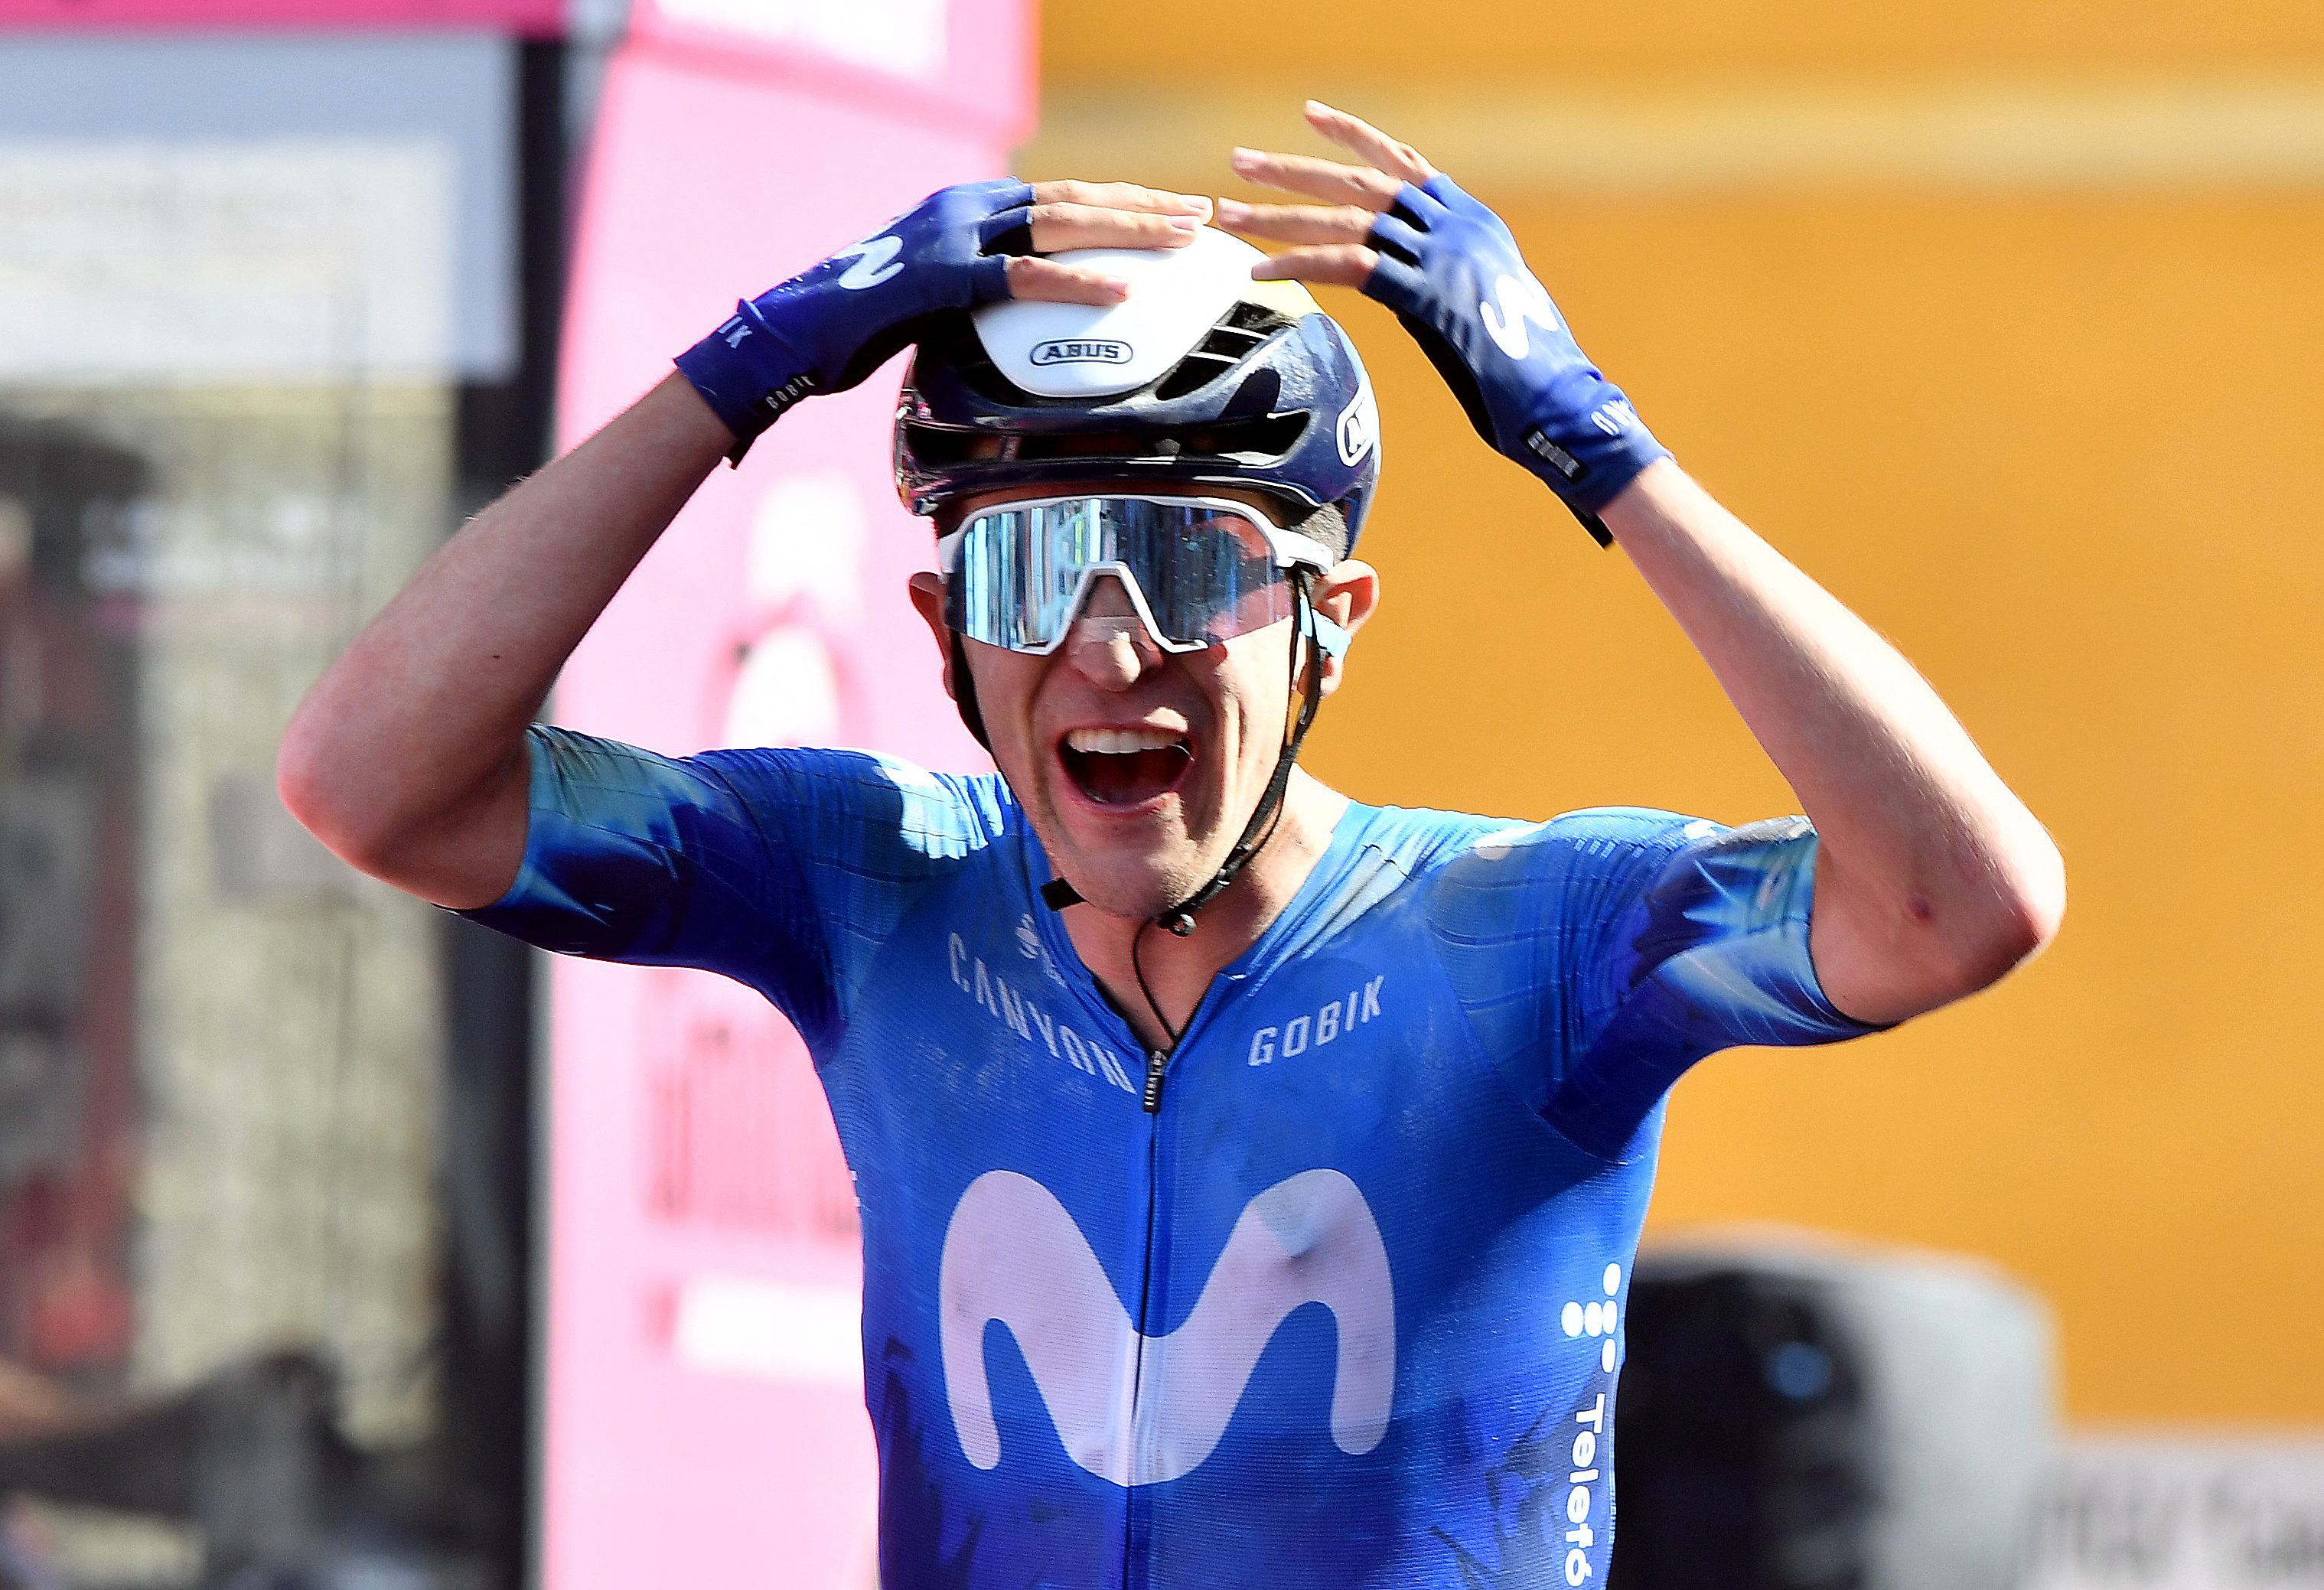 Giro d'Italia - Stage 6 - Viareggio to Rapolano Terme